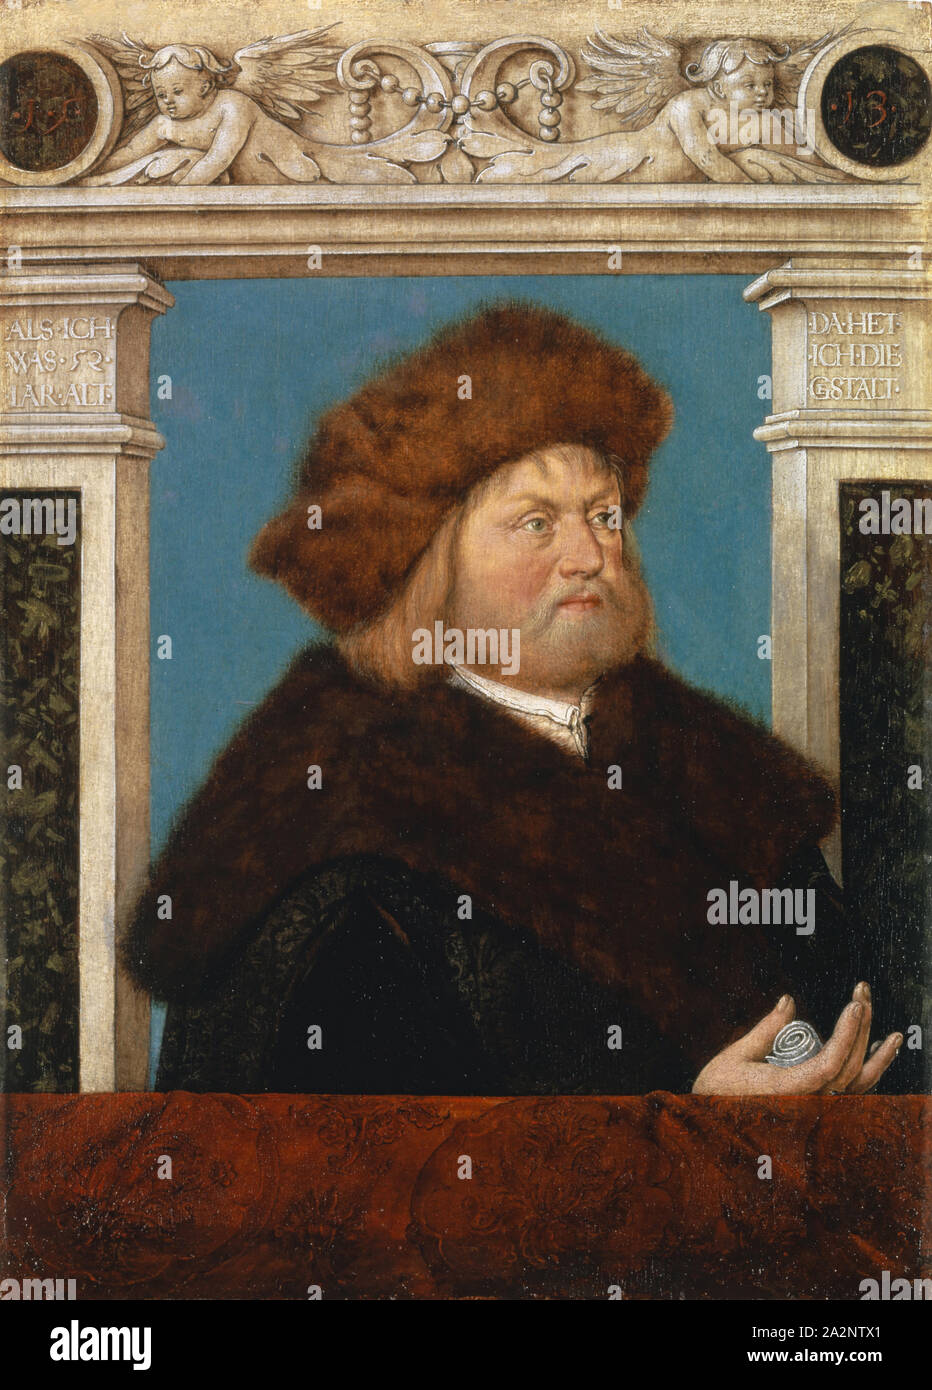 Ritratto di Philipp Adler, 1513, olio su linden (?) il legno, 41,3 x 29,5 cm, non segnato ma datata: Nel medaglione medaglioni l'anno: • 1 • 5 • • 13 •, su capitelli: ALS • ICH • Che cosa • 52 • IAR • vecchio • (sinistra), DA • HET • mi • • G (e) STALT • (a destra), Hans Holbein d. Ä., Augsburg um 1460/65-1524 Foto Stock